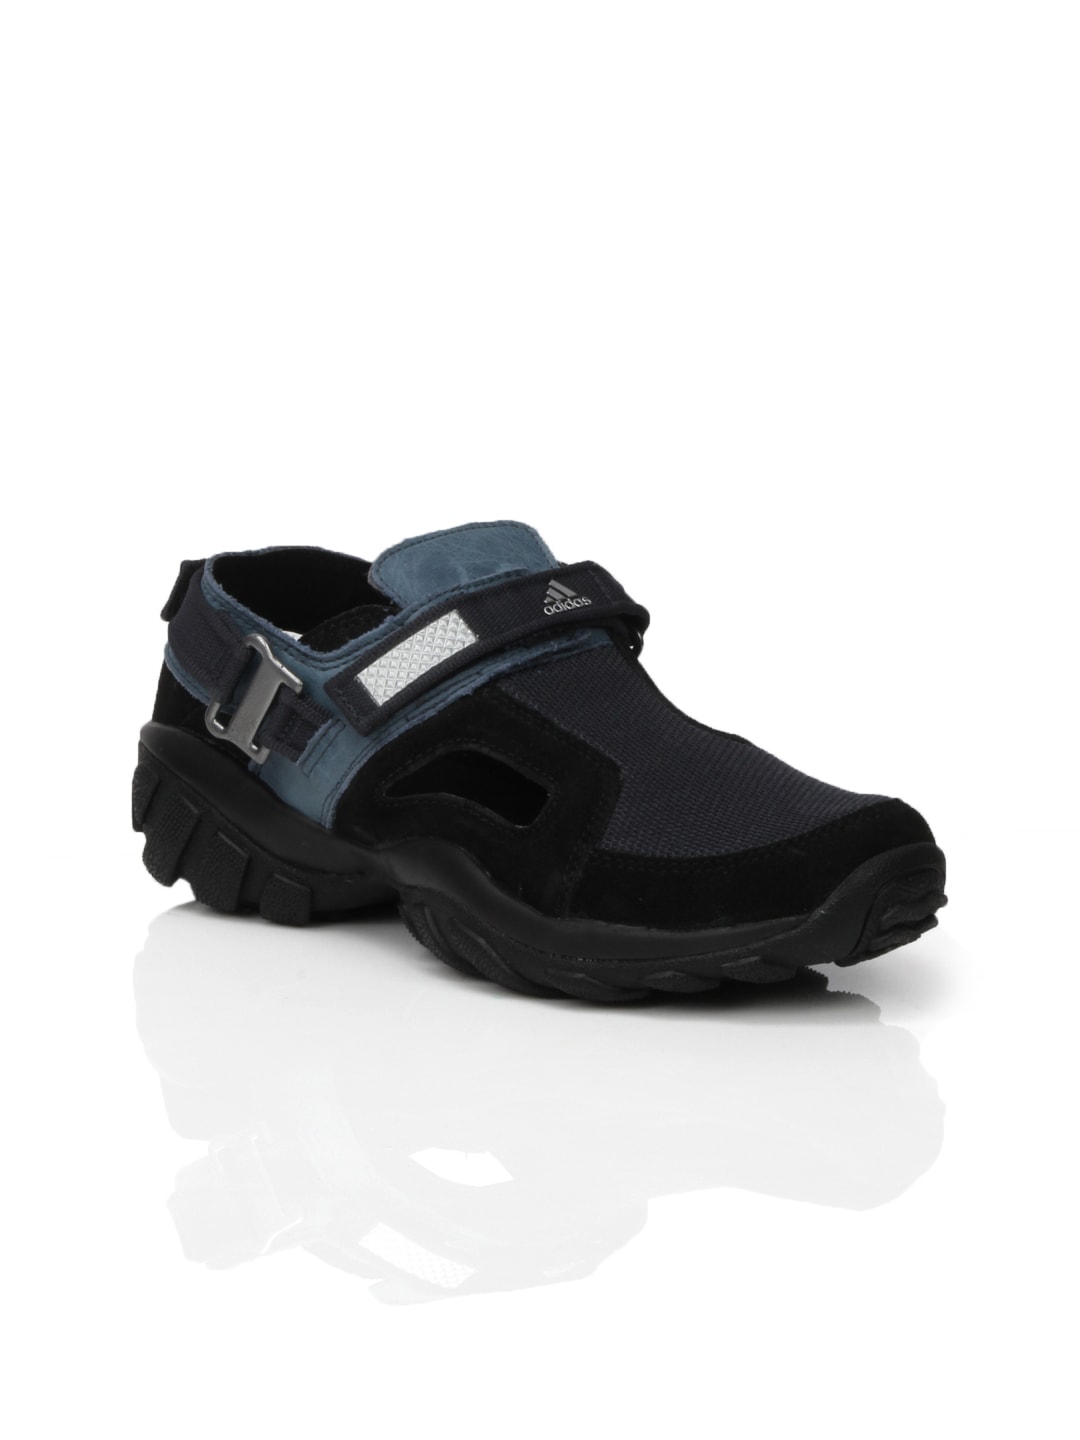 ADIDAS Men Pural Black Sandals